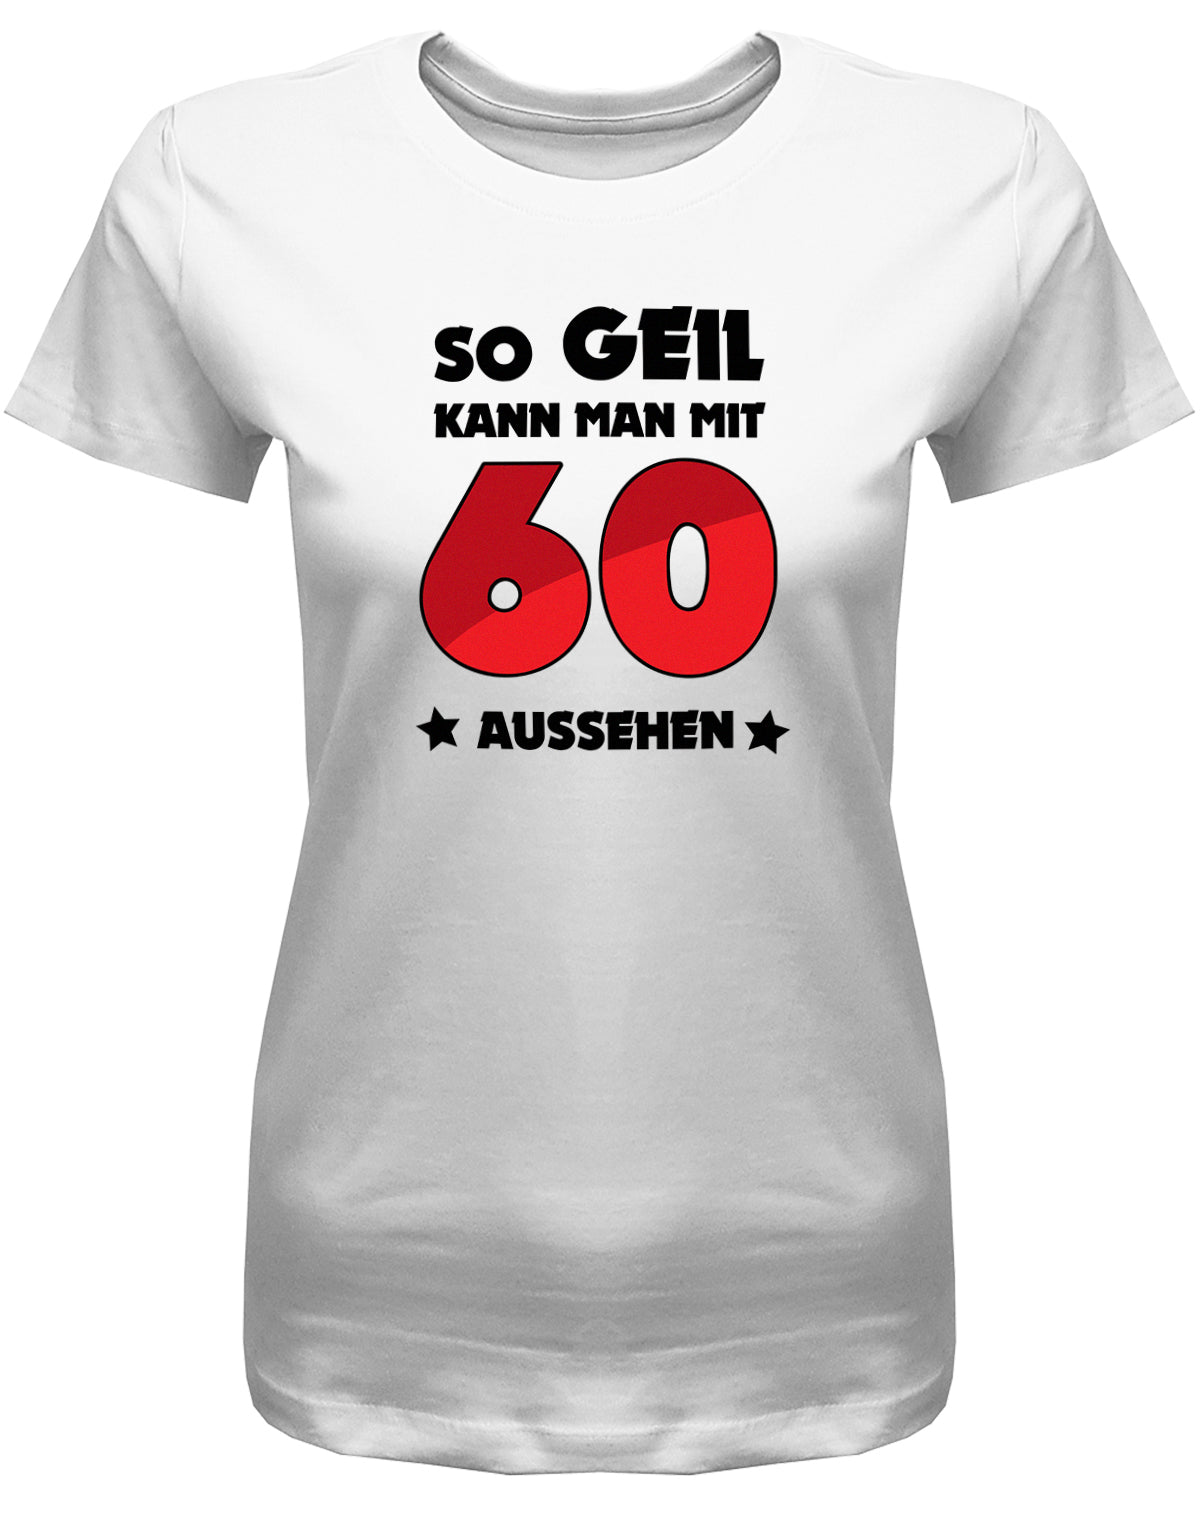 Compare prices for Geschenke Zum 60 Geburtstag für Männer & Frauen